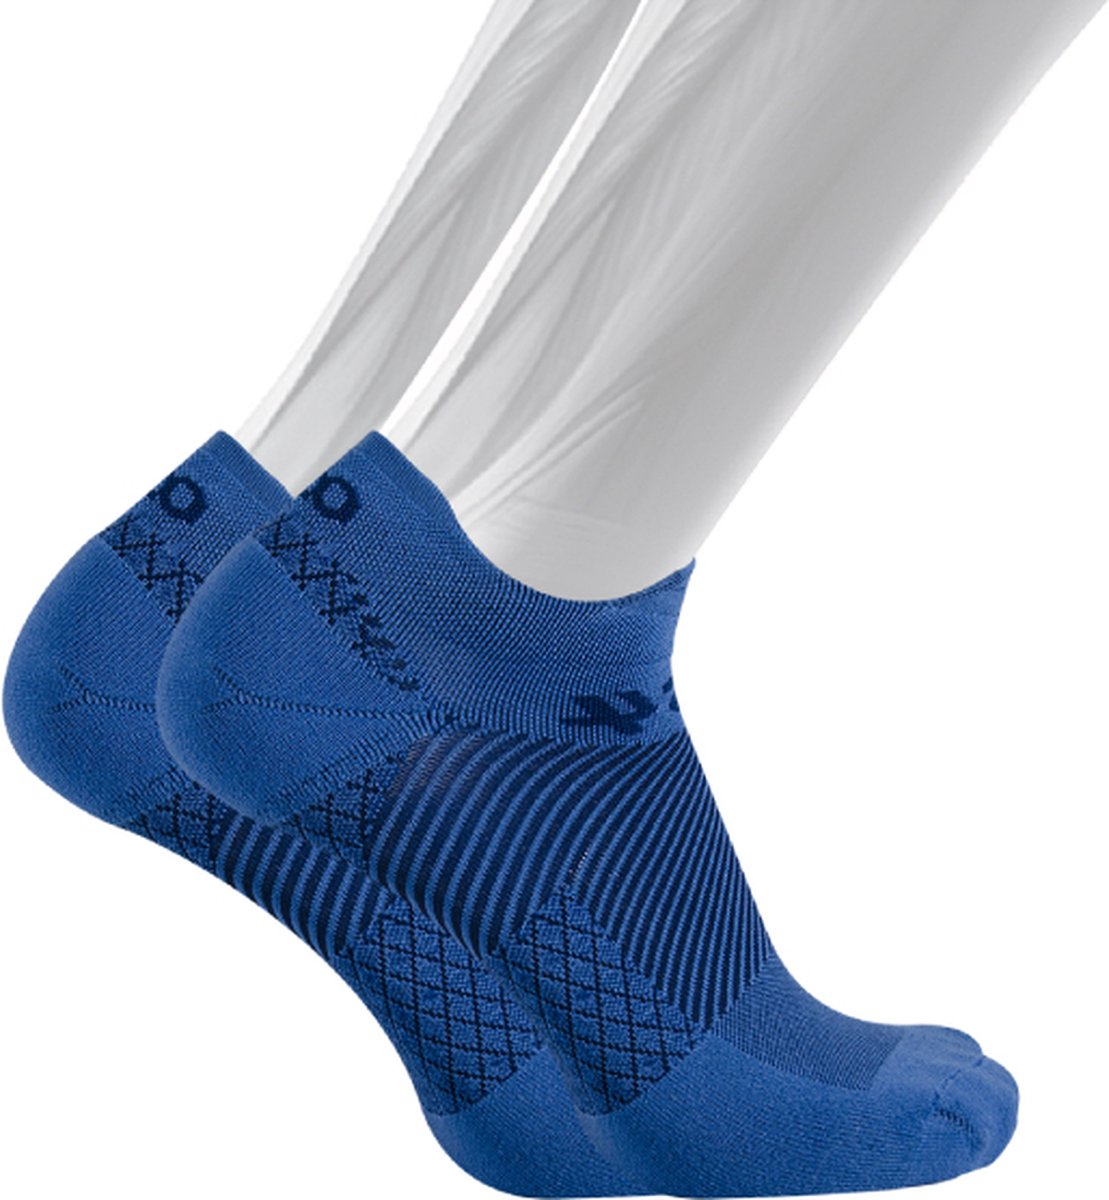 OS1st FS4 fasciitis plantaris compressie sneakersokken maat XL (48+) – blauw – hielspoor – vermoeide voeten – pijn onder de voetboog – hielpijn – ademend – vochtregulerend – verkoelend - naadloos – antibacterieel